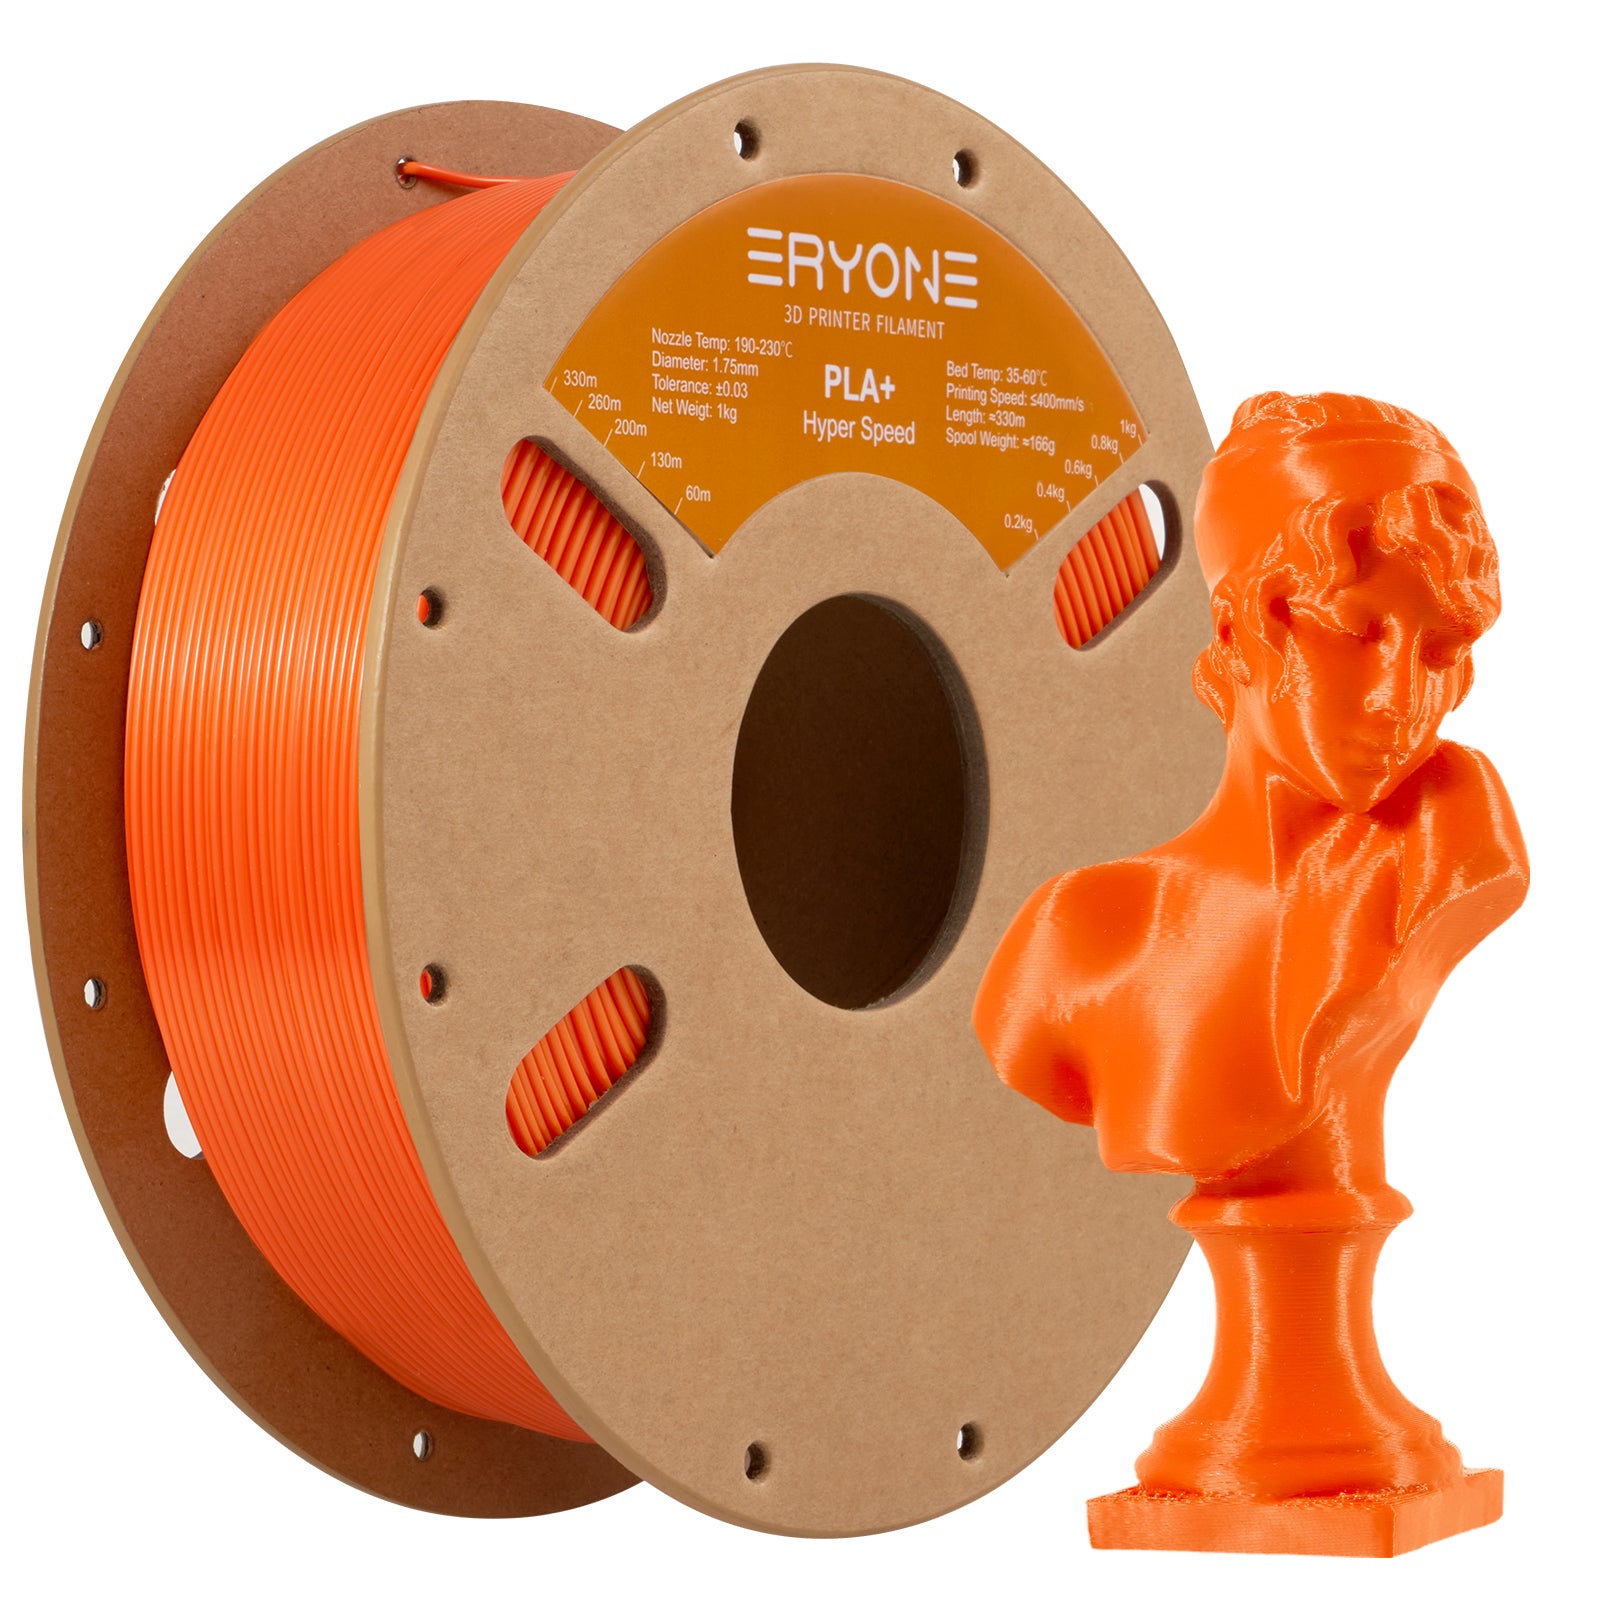 Filament for impressive 3D ERYONE PLA+, dimensional precision +/- 0.05 mm 1kg (2.2LBS)/Pool, 1.75mm